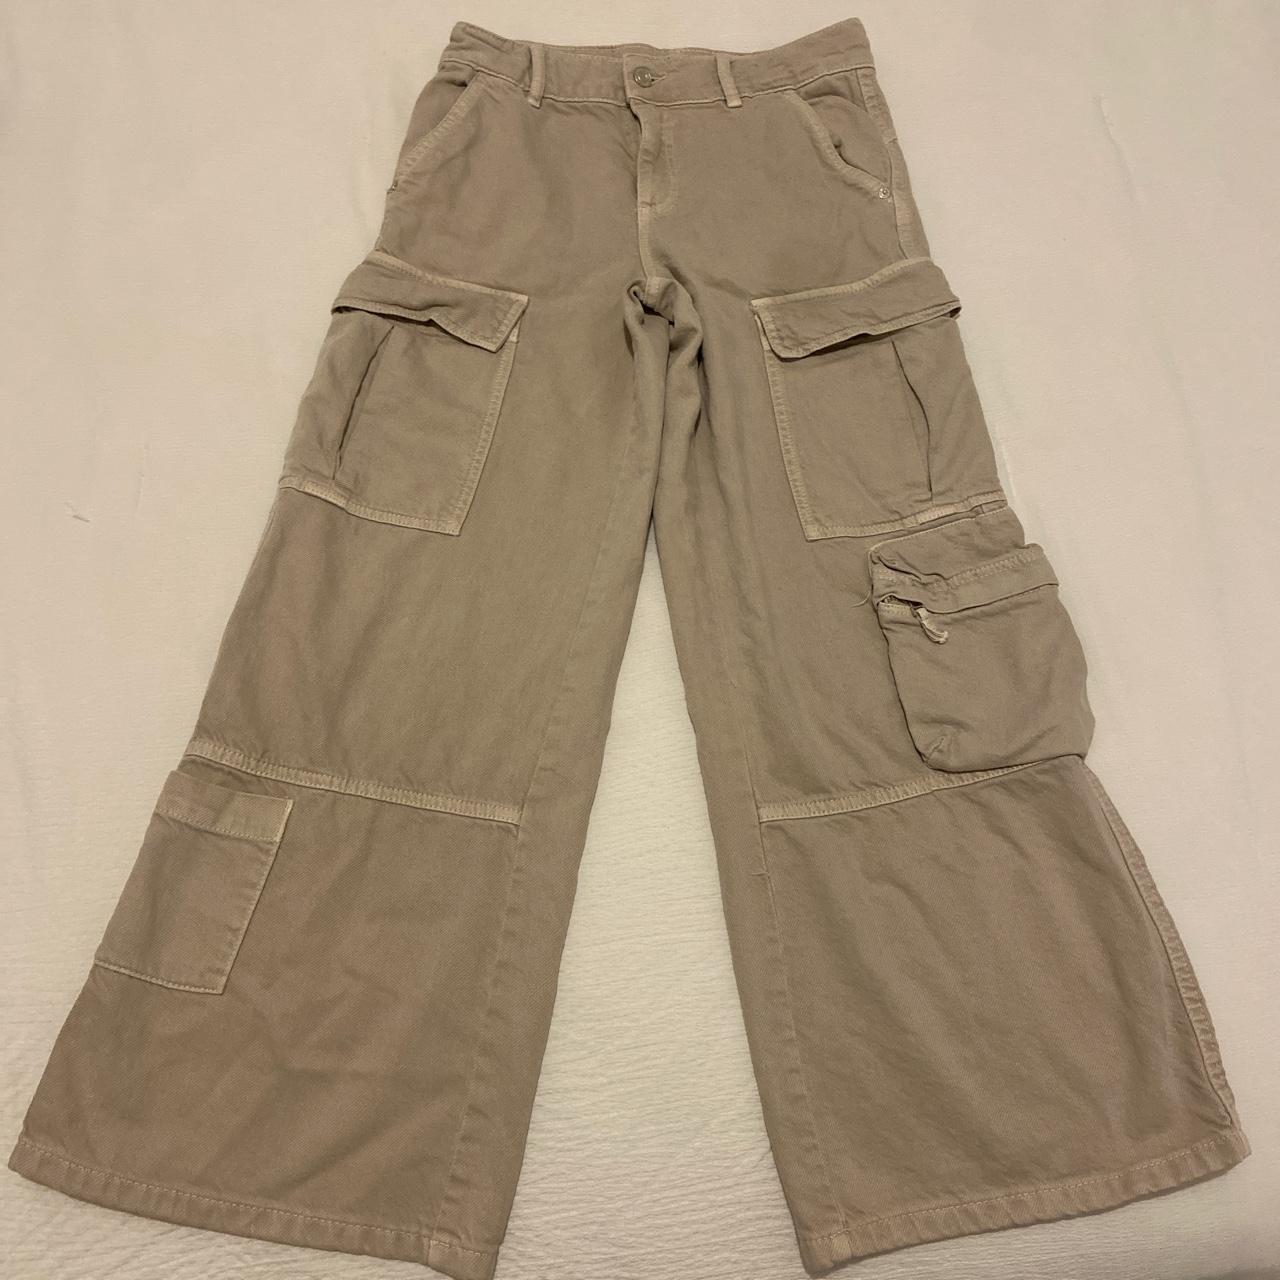 Baggy Cargo pants Beige/ Off white Zara Kids size - Depop